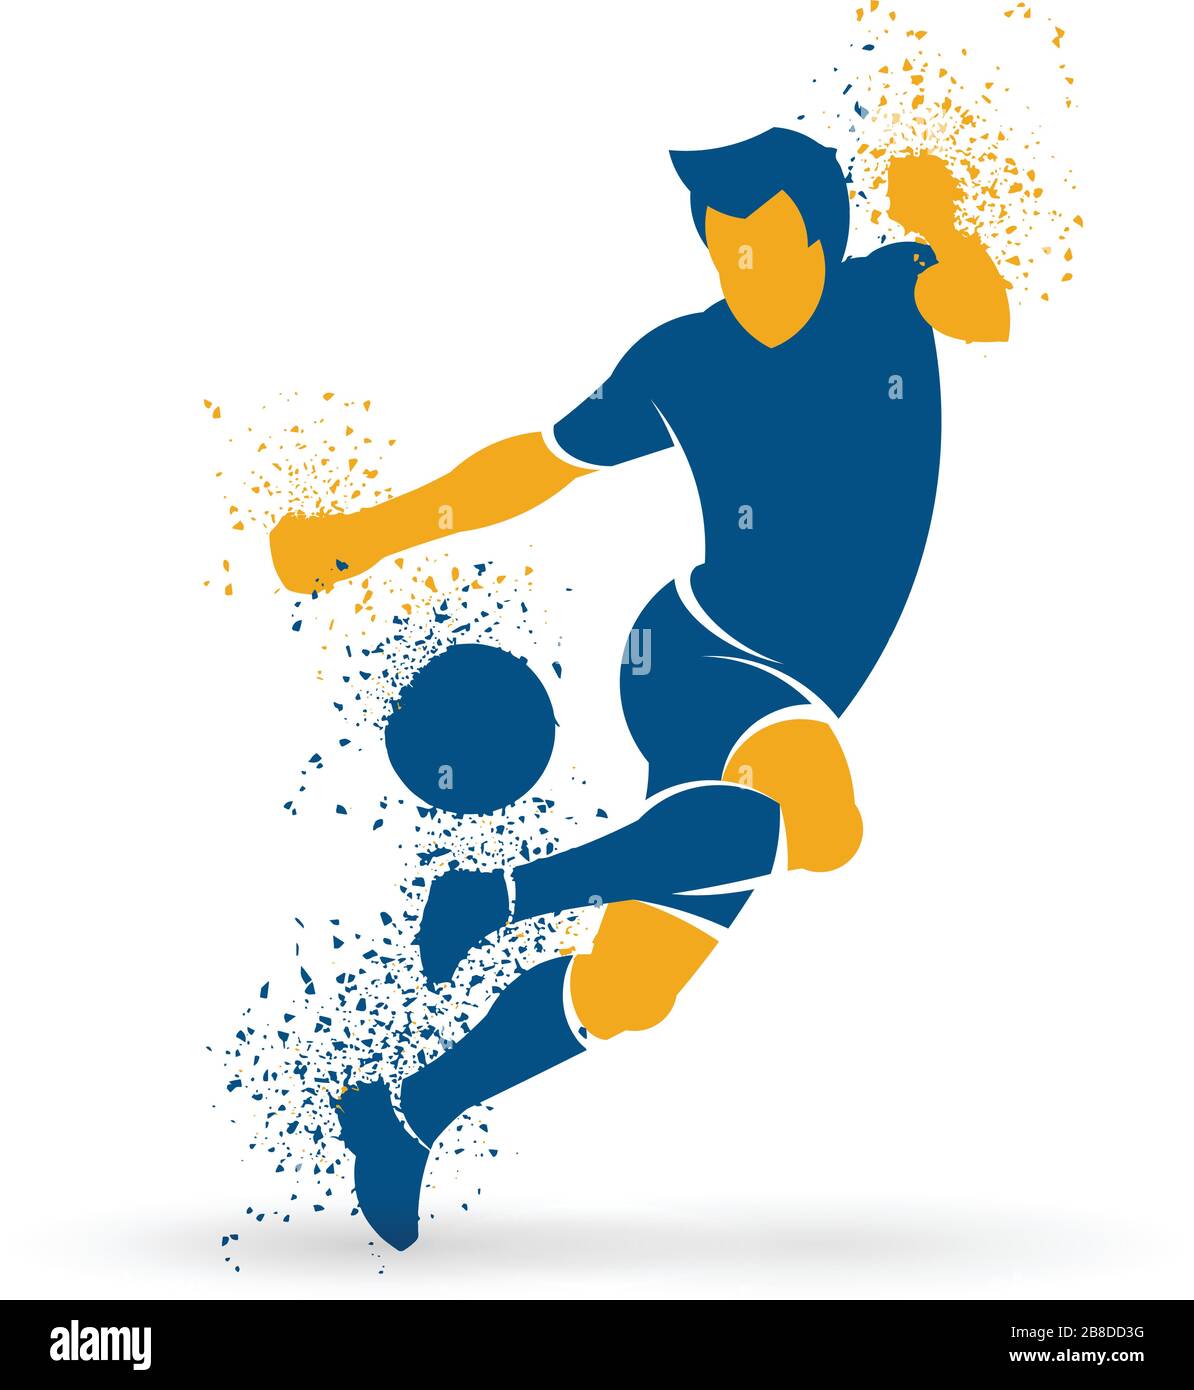 Vektorgrafiken eines Fußballspielers: Fußballspieler, der mit einem Fußballball spielt und sein können zeigt. Stock Vektor